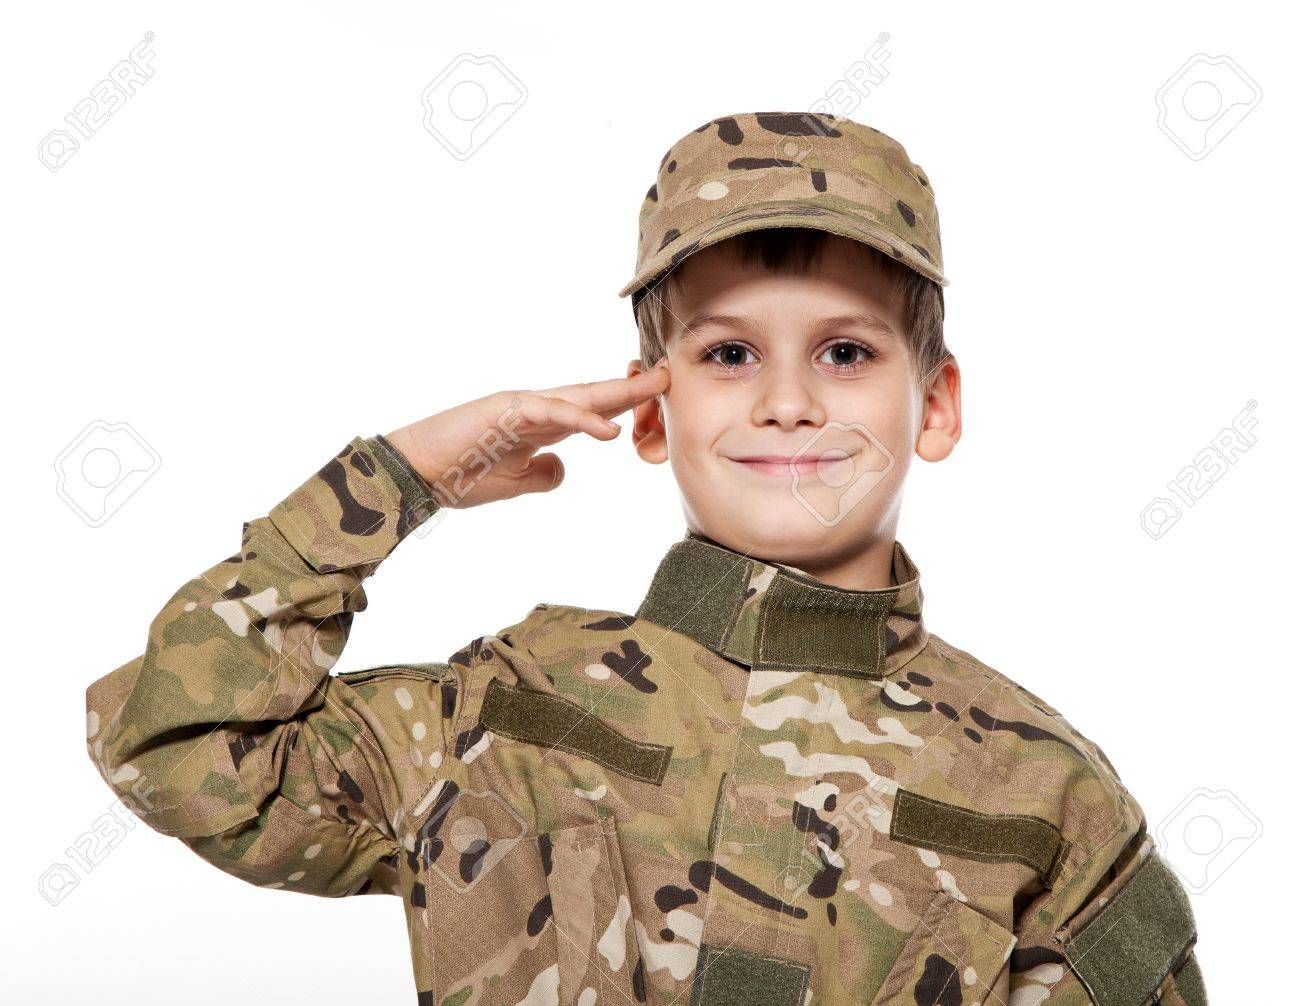 Los menores de 10 años que jueguen el Fornite recibirán adiestramiento militar real